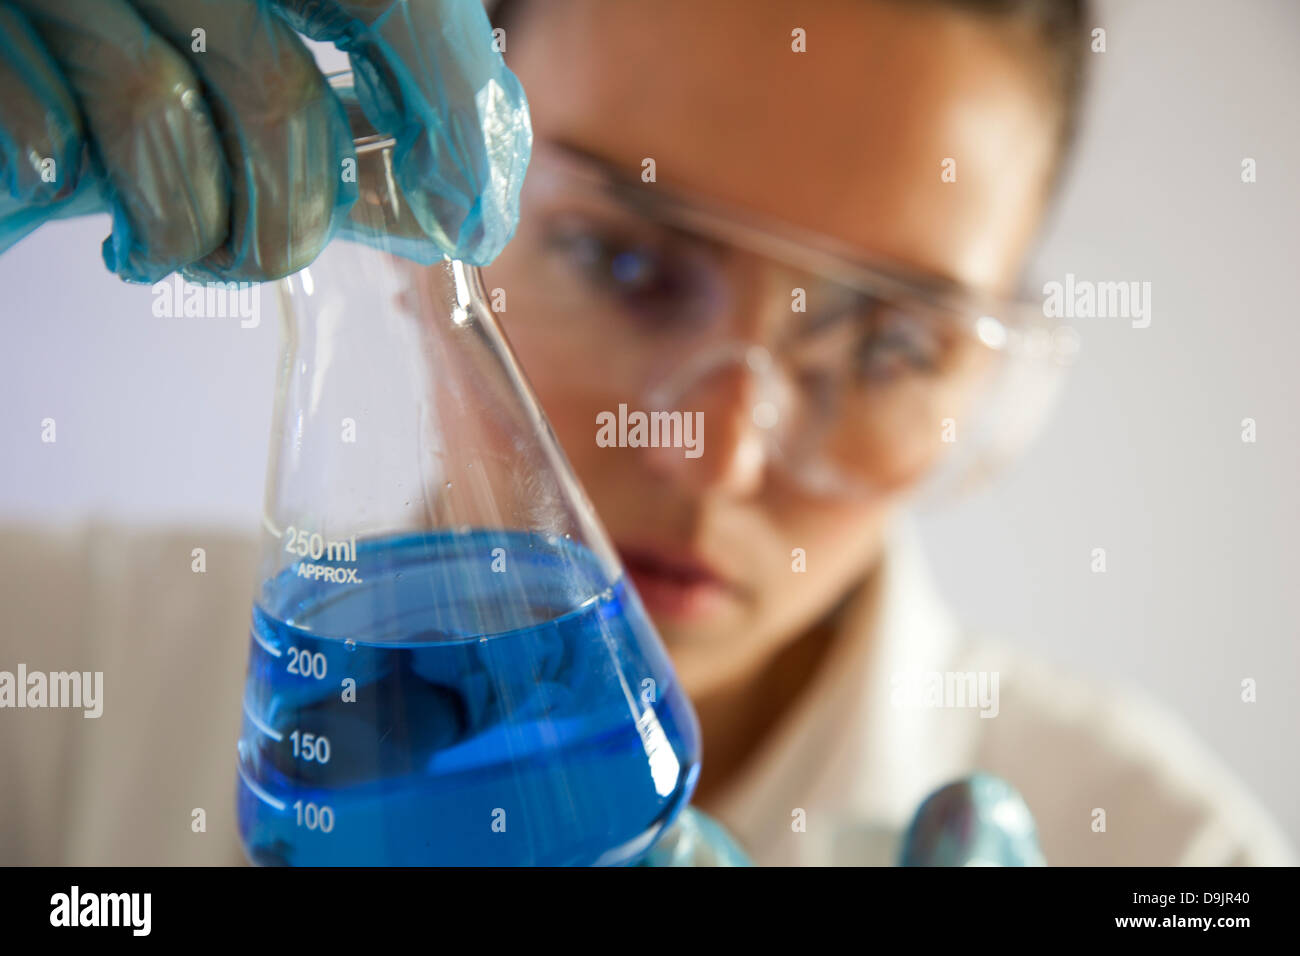 Técnico de laboratorio o científico femenino sosteniendo un vaso de precipitado de vidrio con líquido azul. Foto de stock